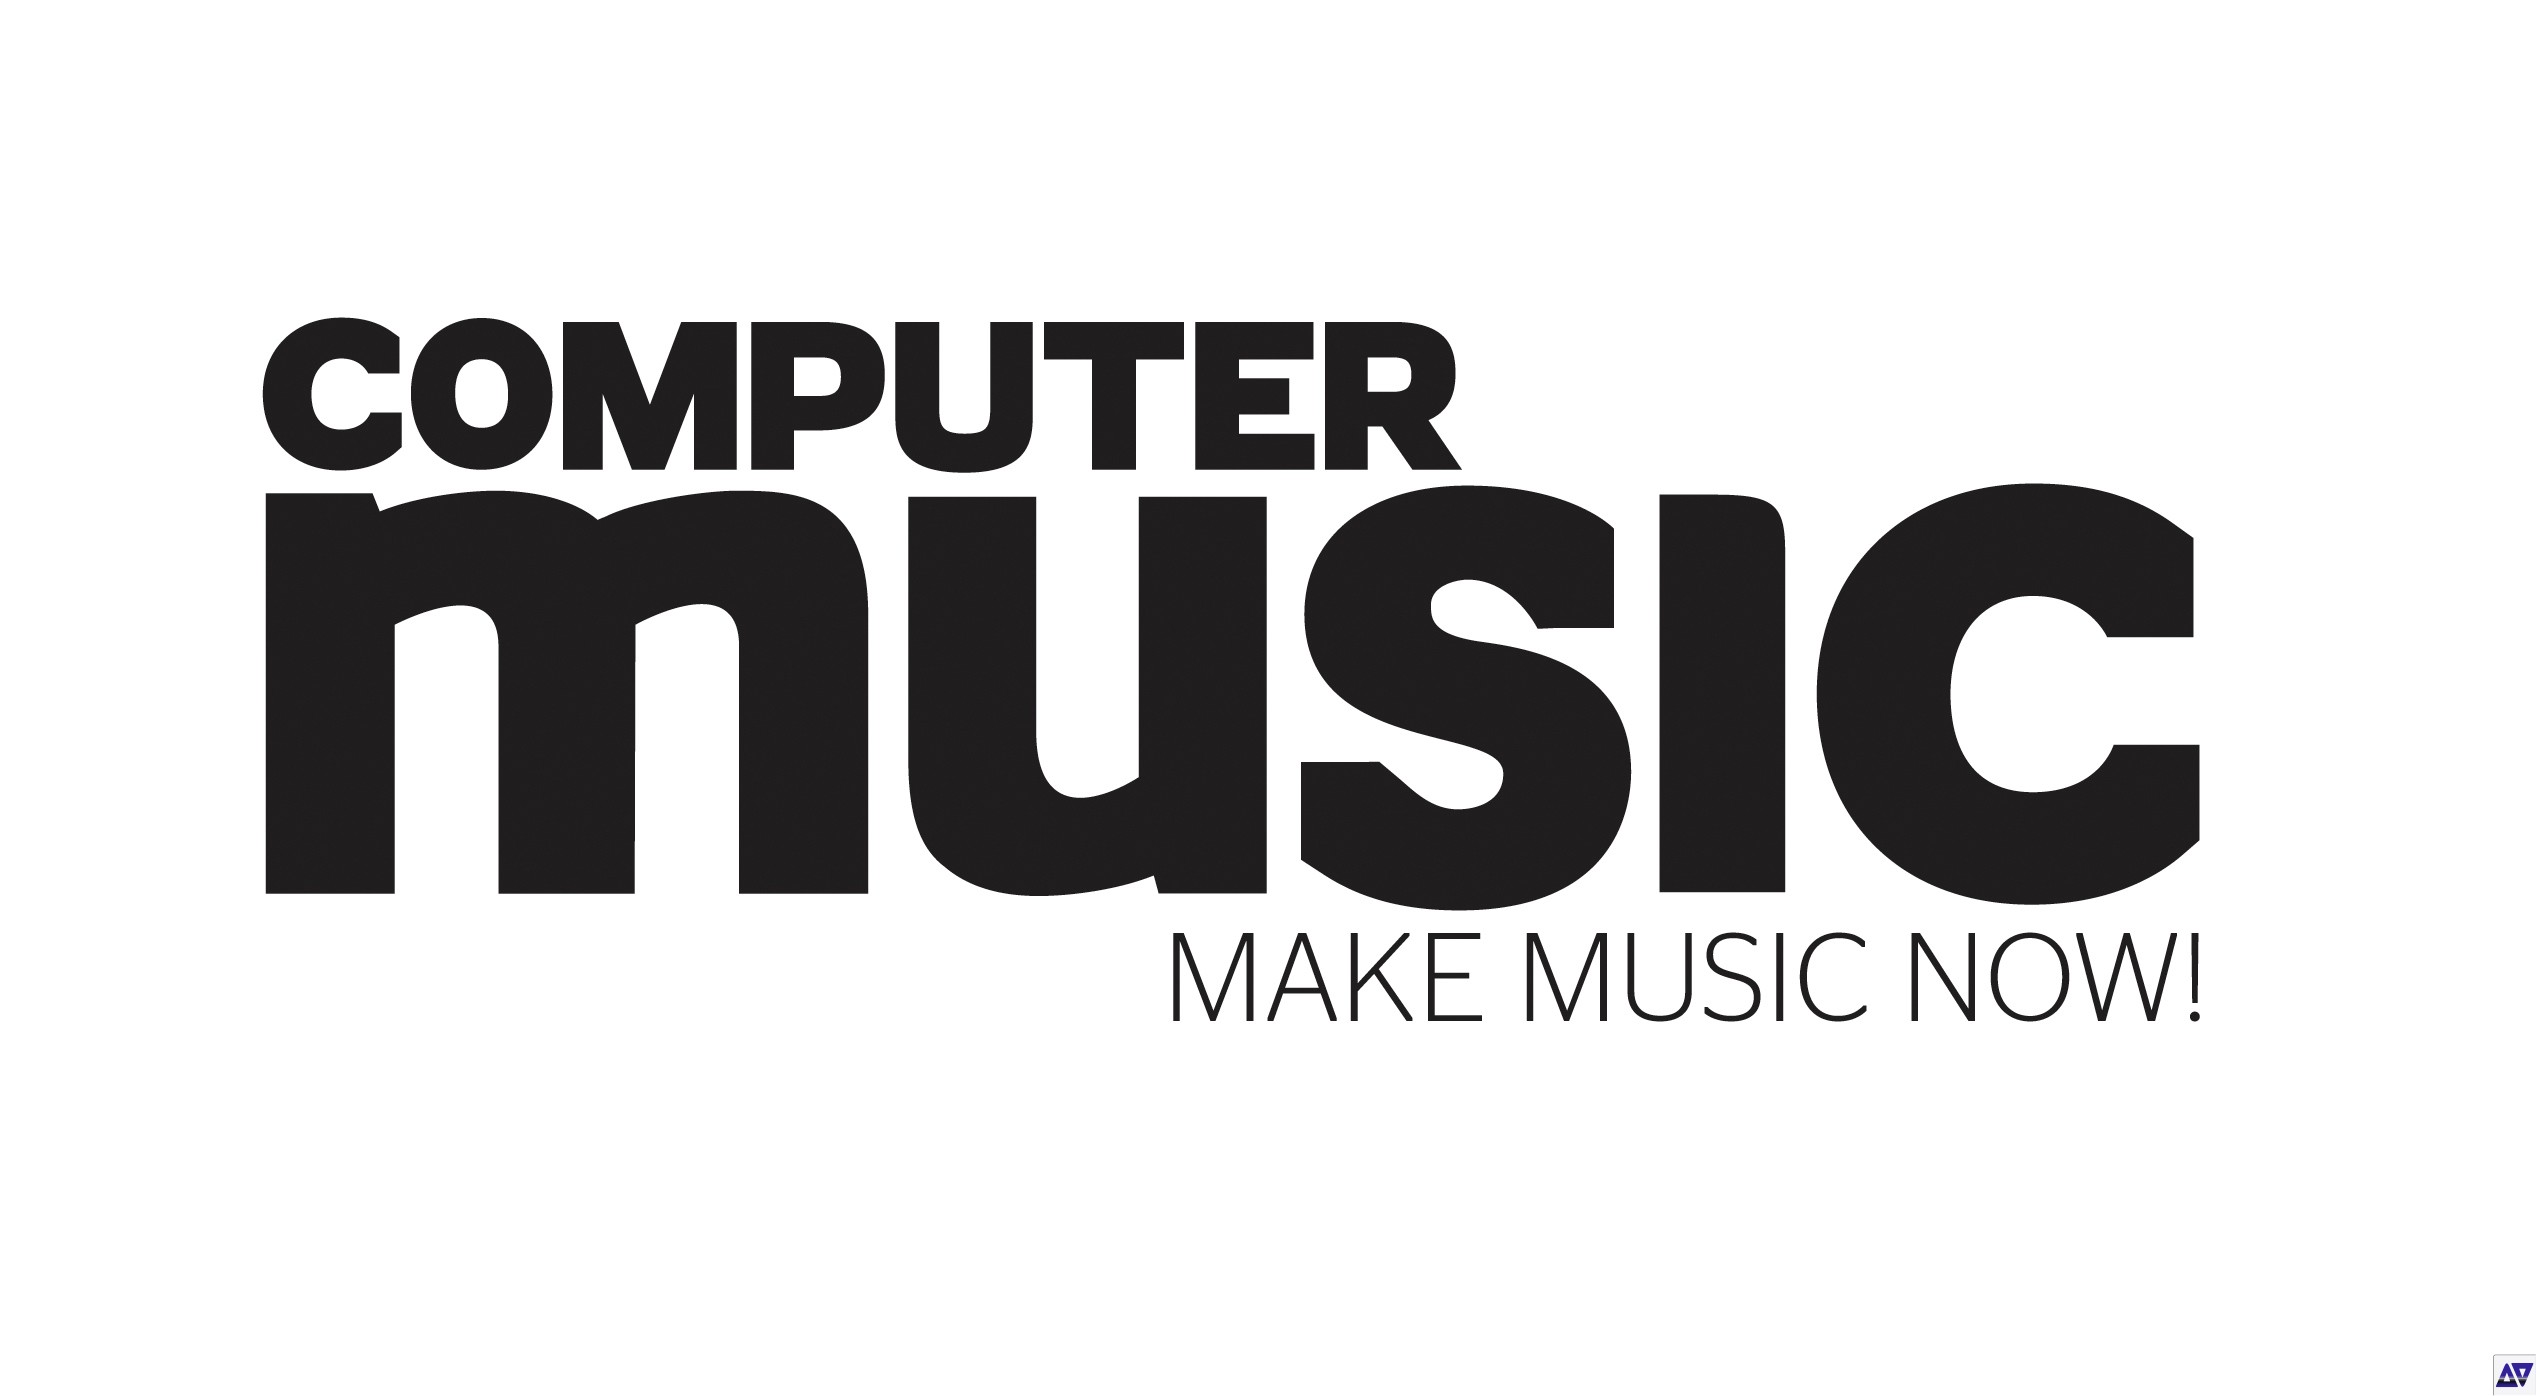 Music made better. Make Music. Musician Magazine logo. Computer Magazine. IIX.